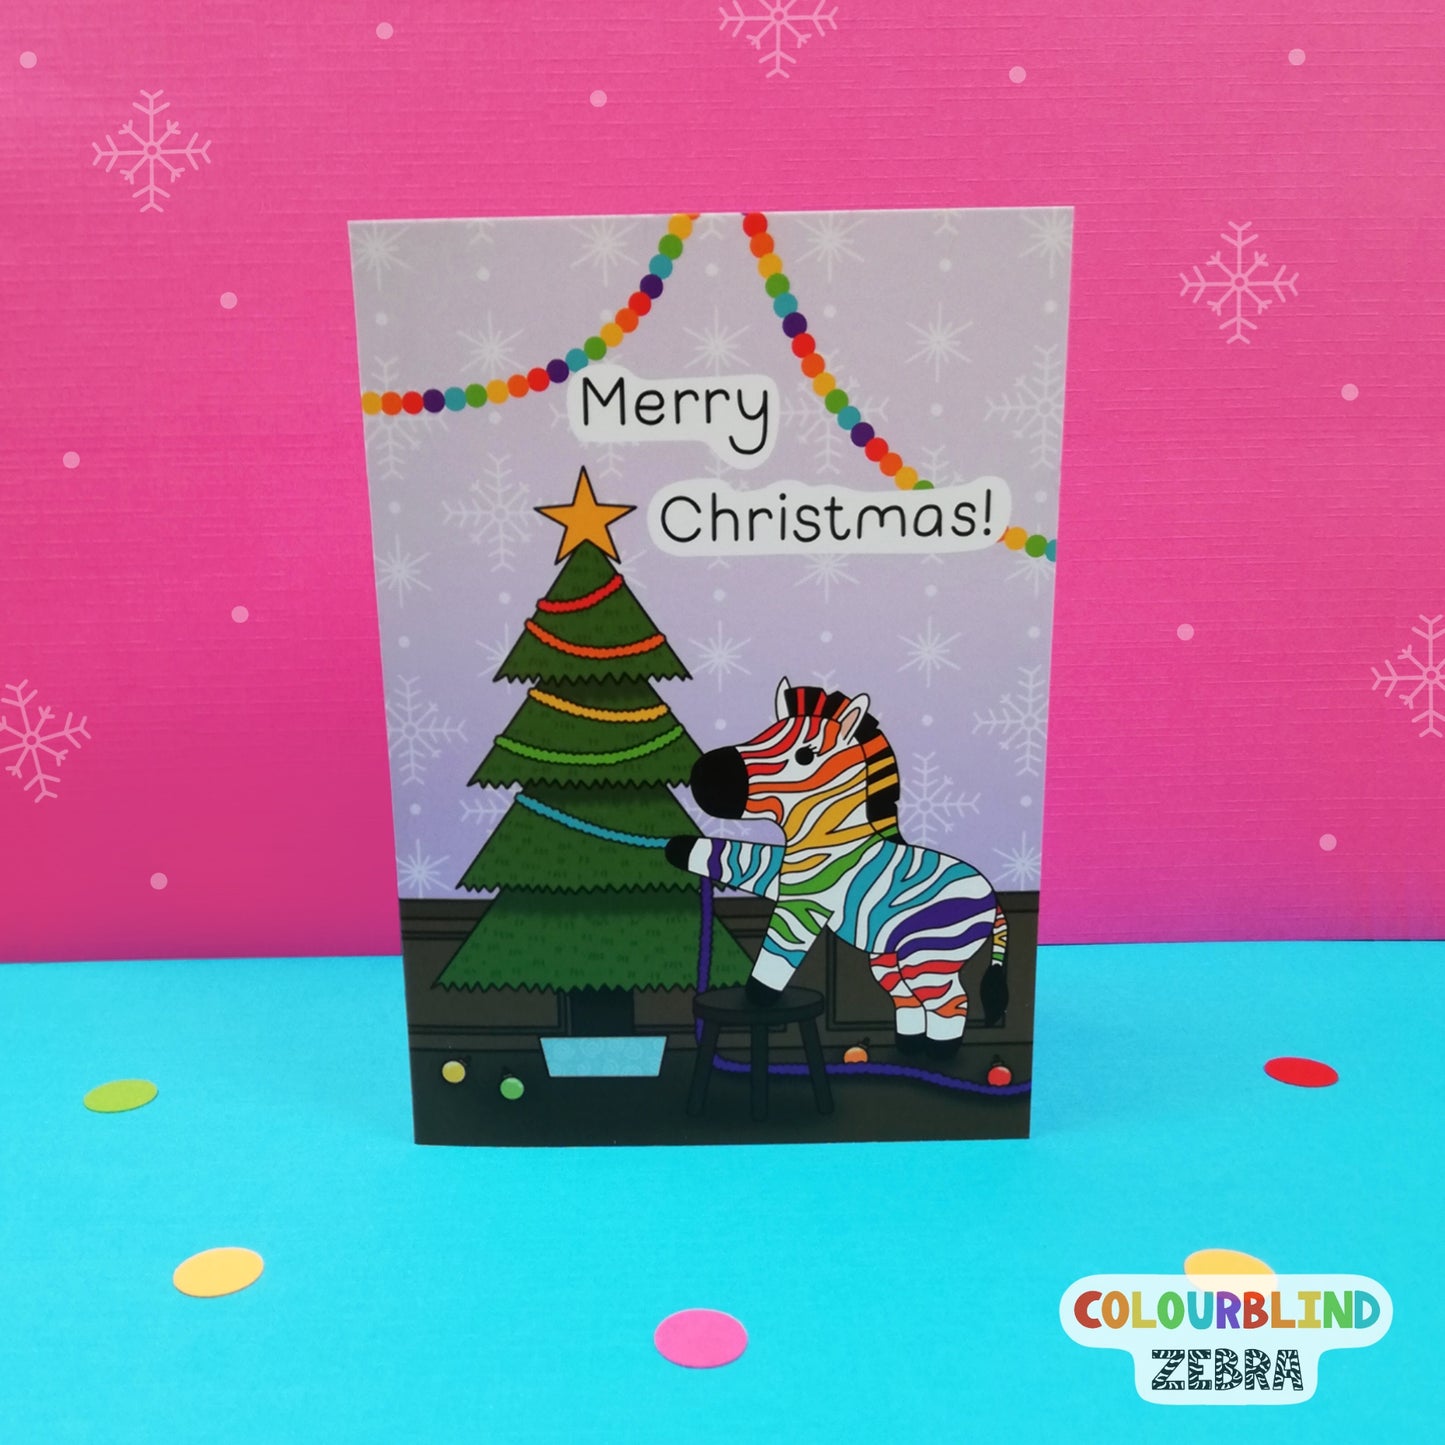 Rainbow Zebra Chronic Illness Merry Christmas Card